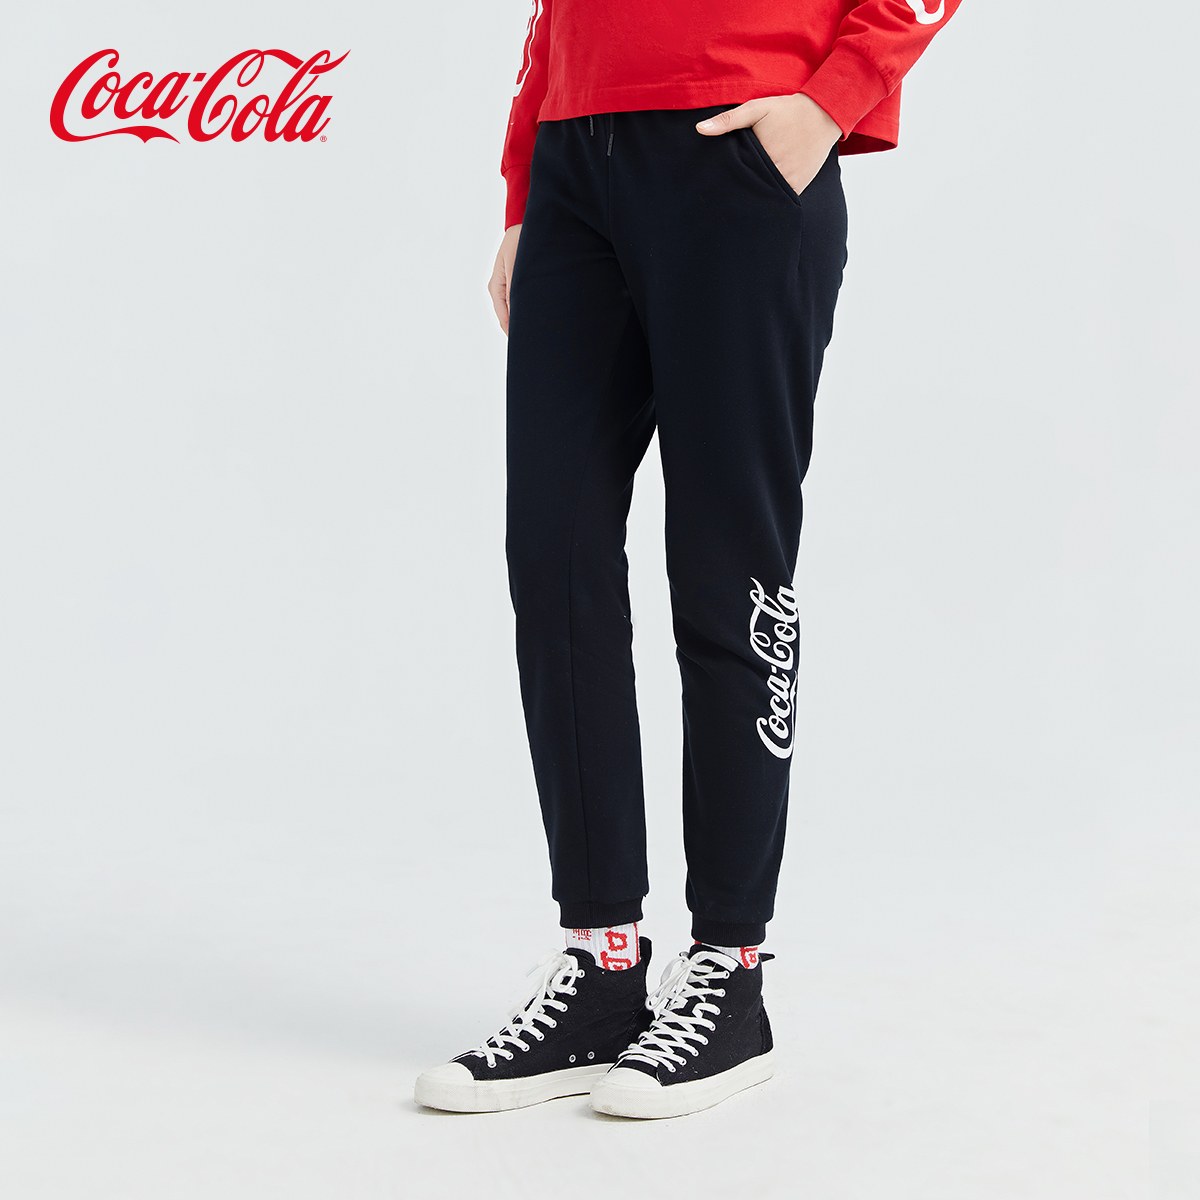 Coca-Cola可口可乐官方卫裤春季新款抽绳设计潮流运动束脚休闲裤